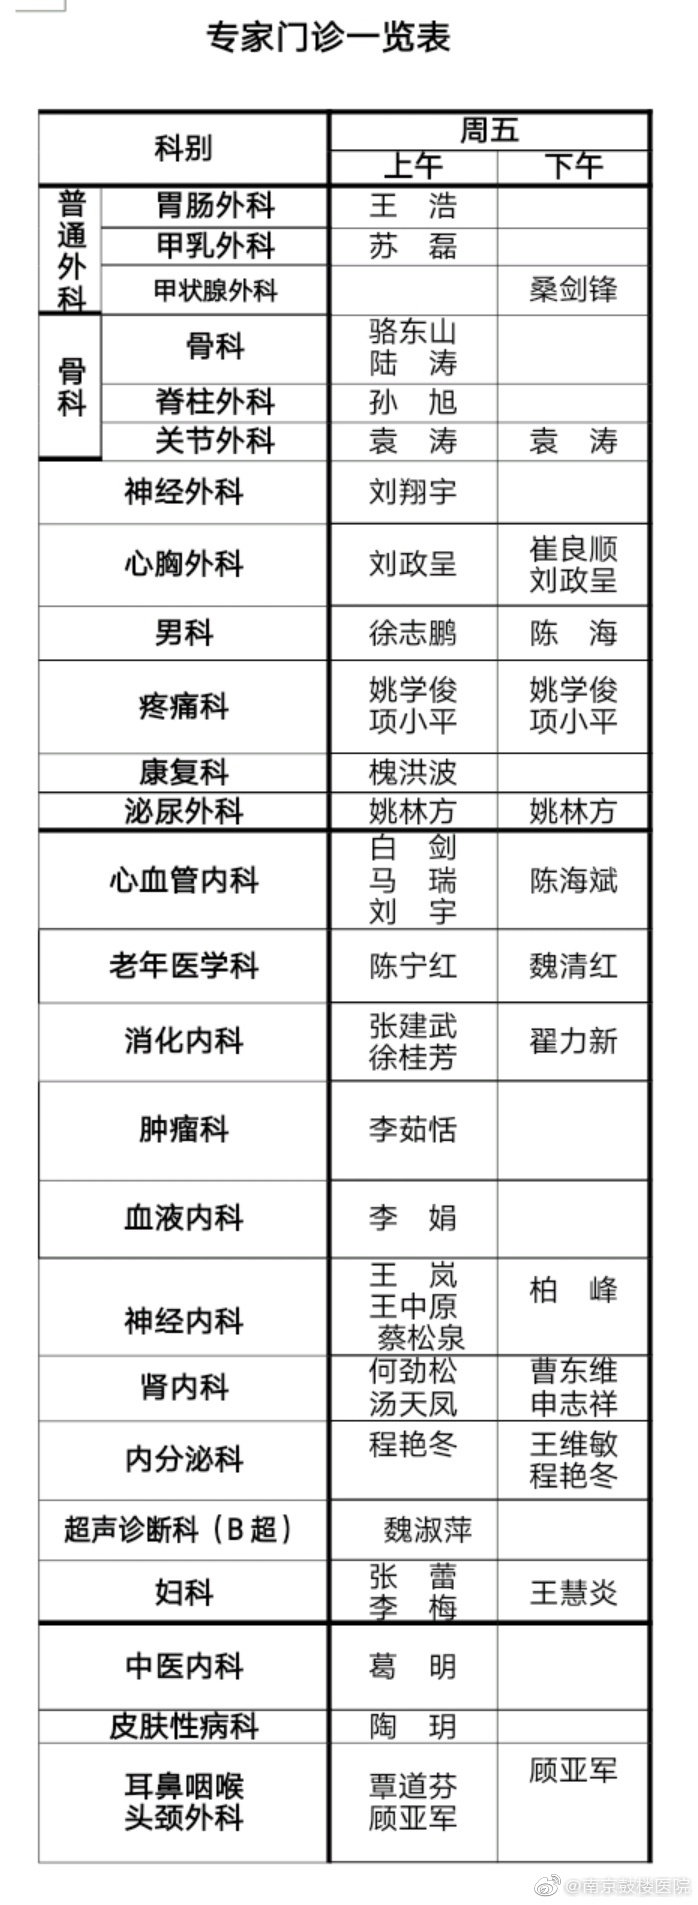 南京鼓楼医院排班表2021072301.jpg